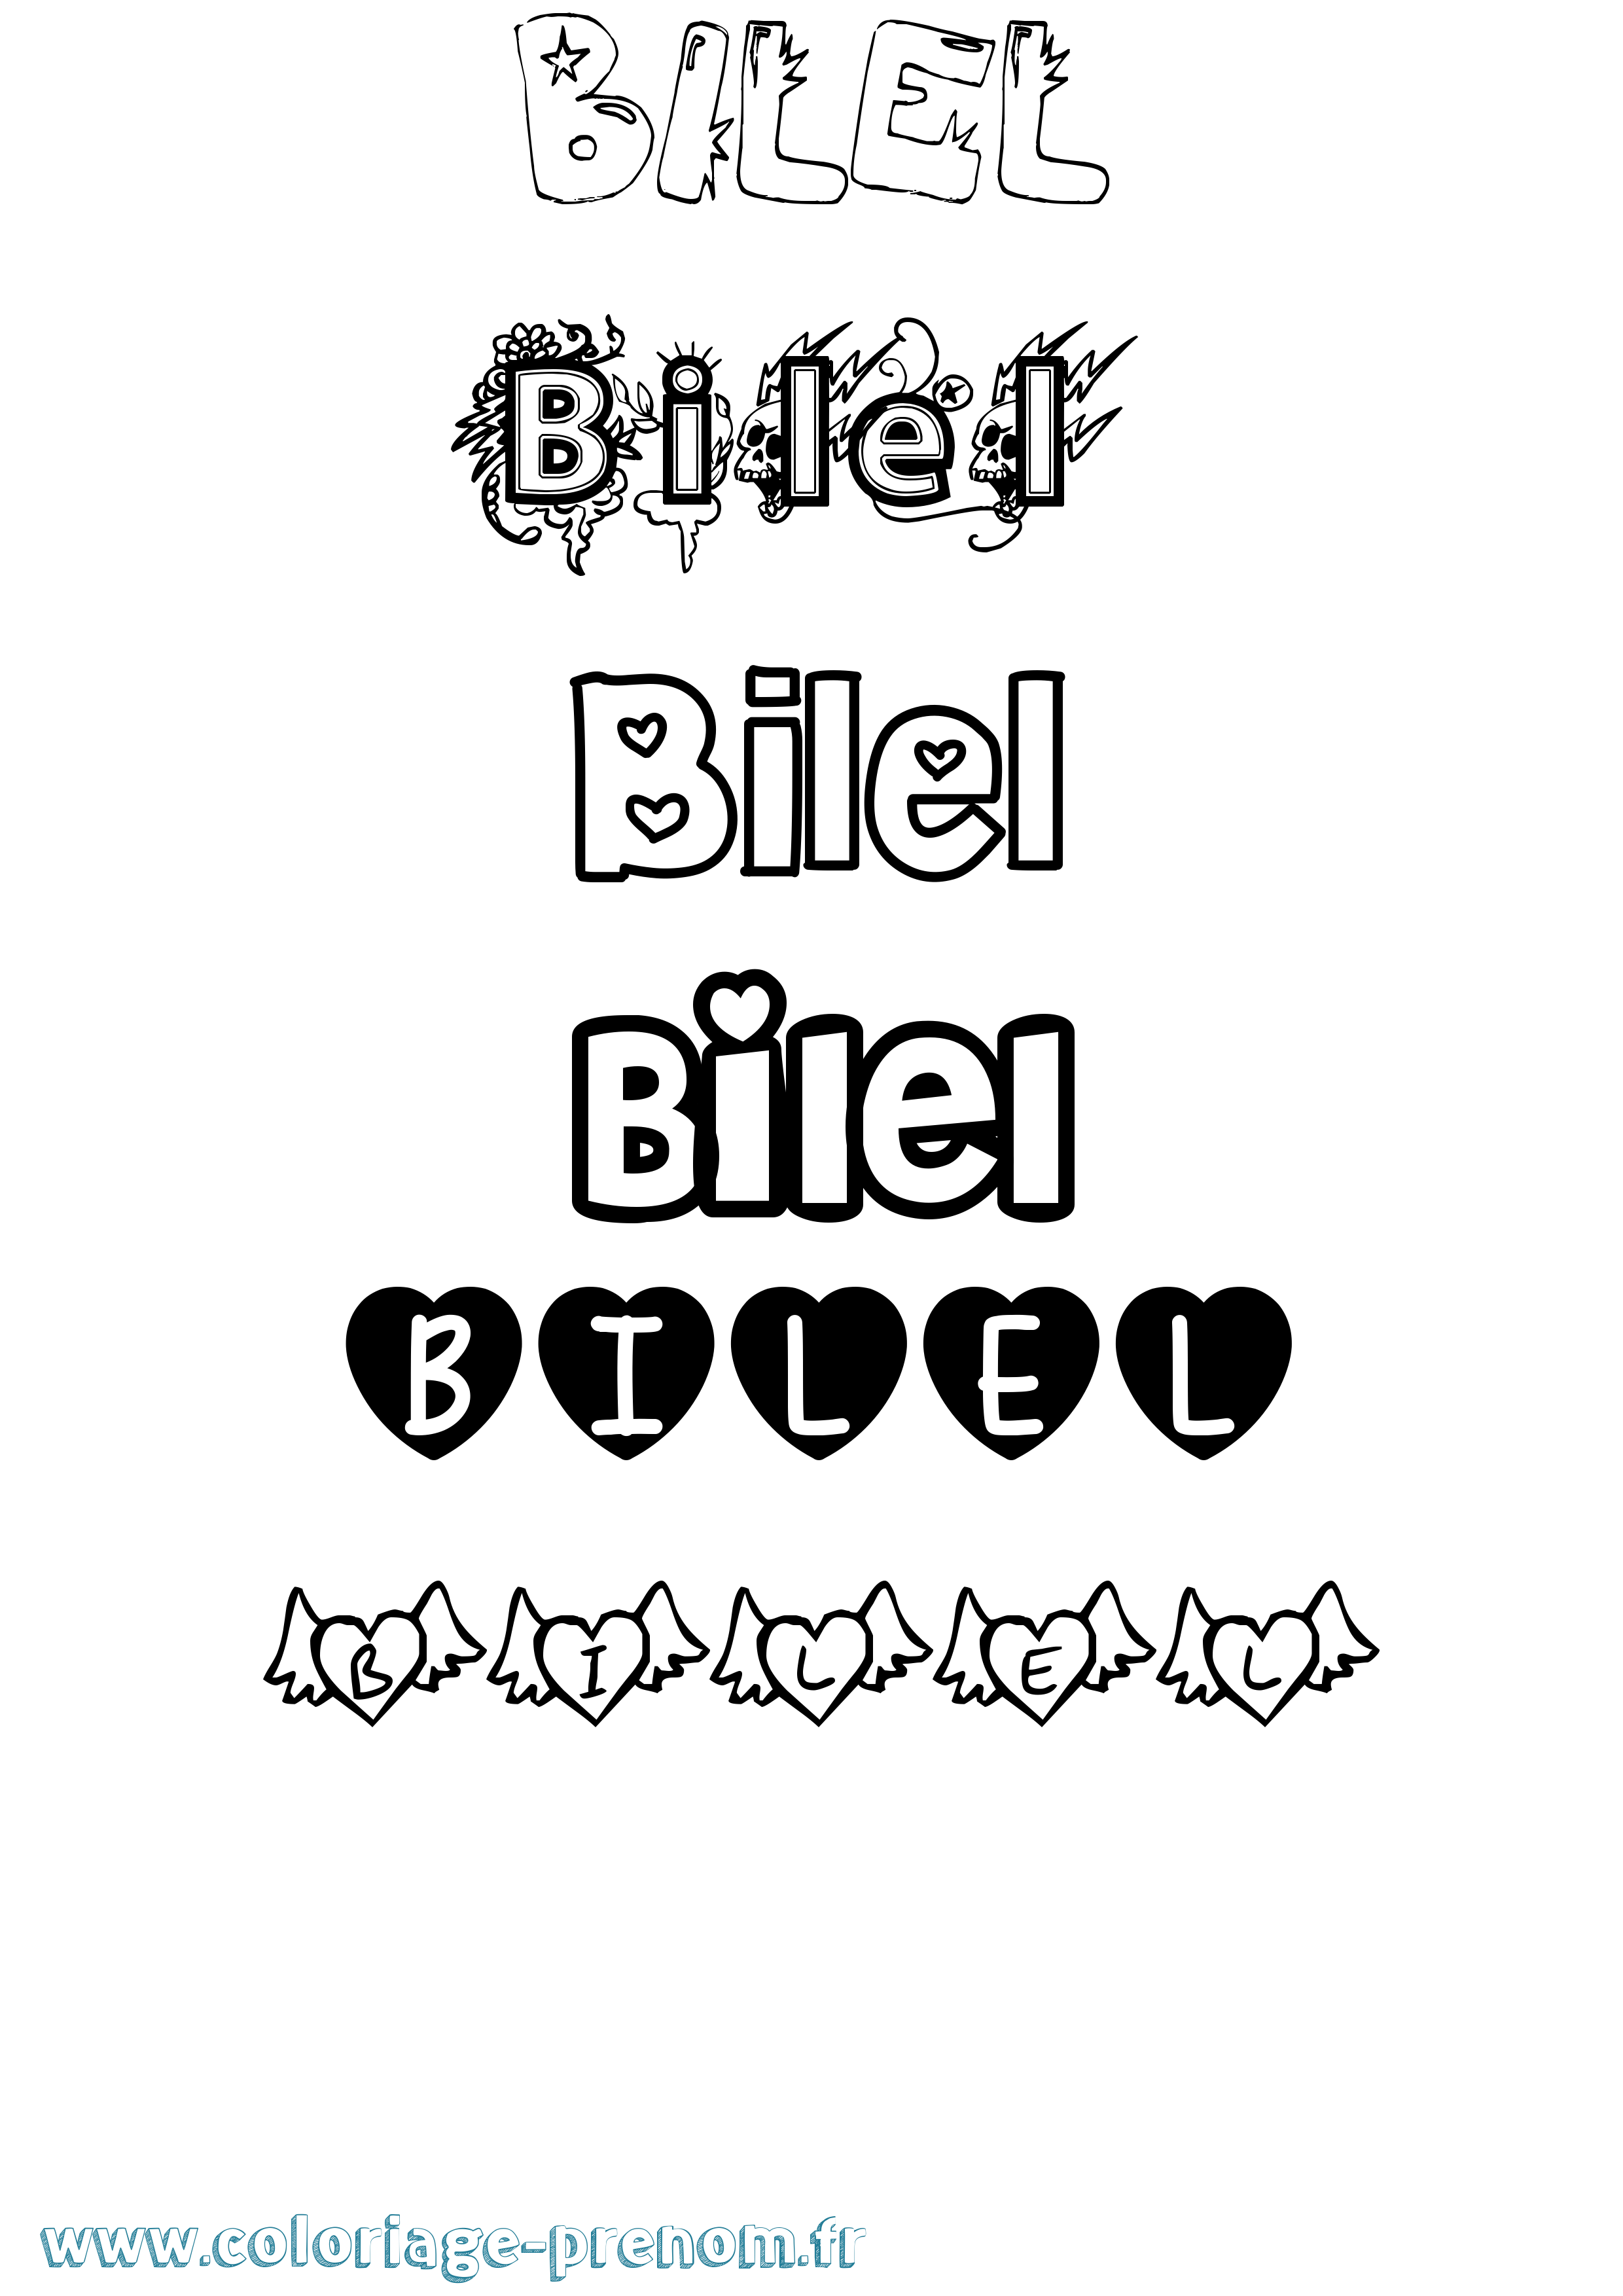 Coloriage prénom Bilel